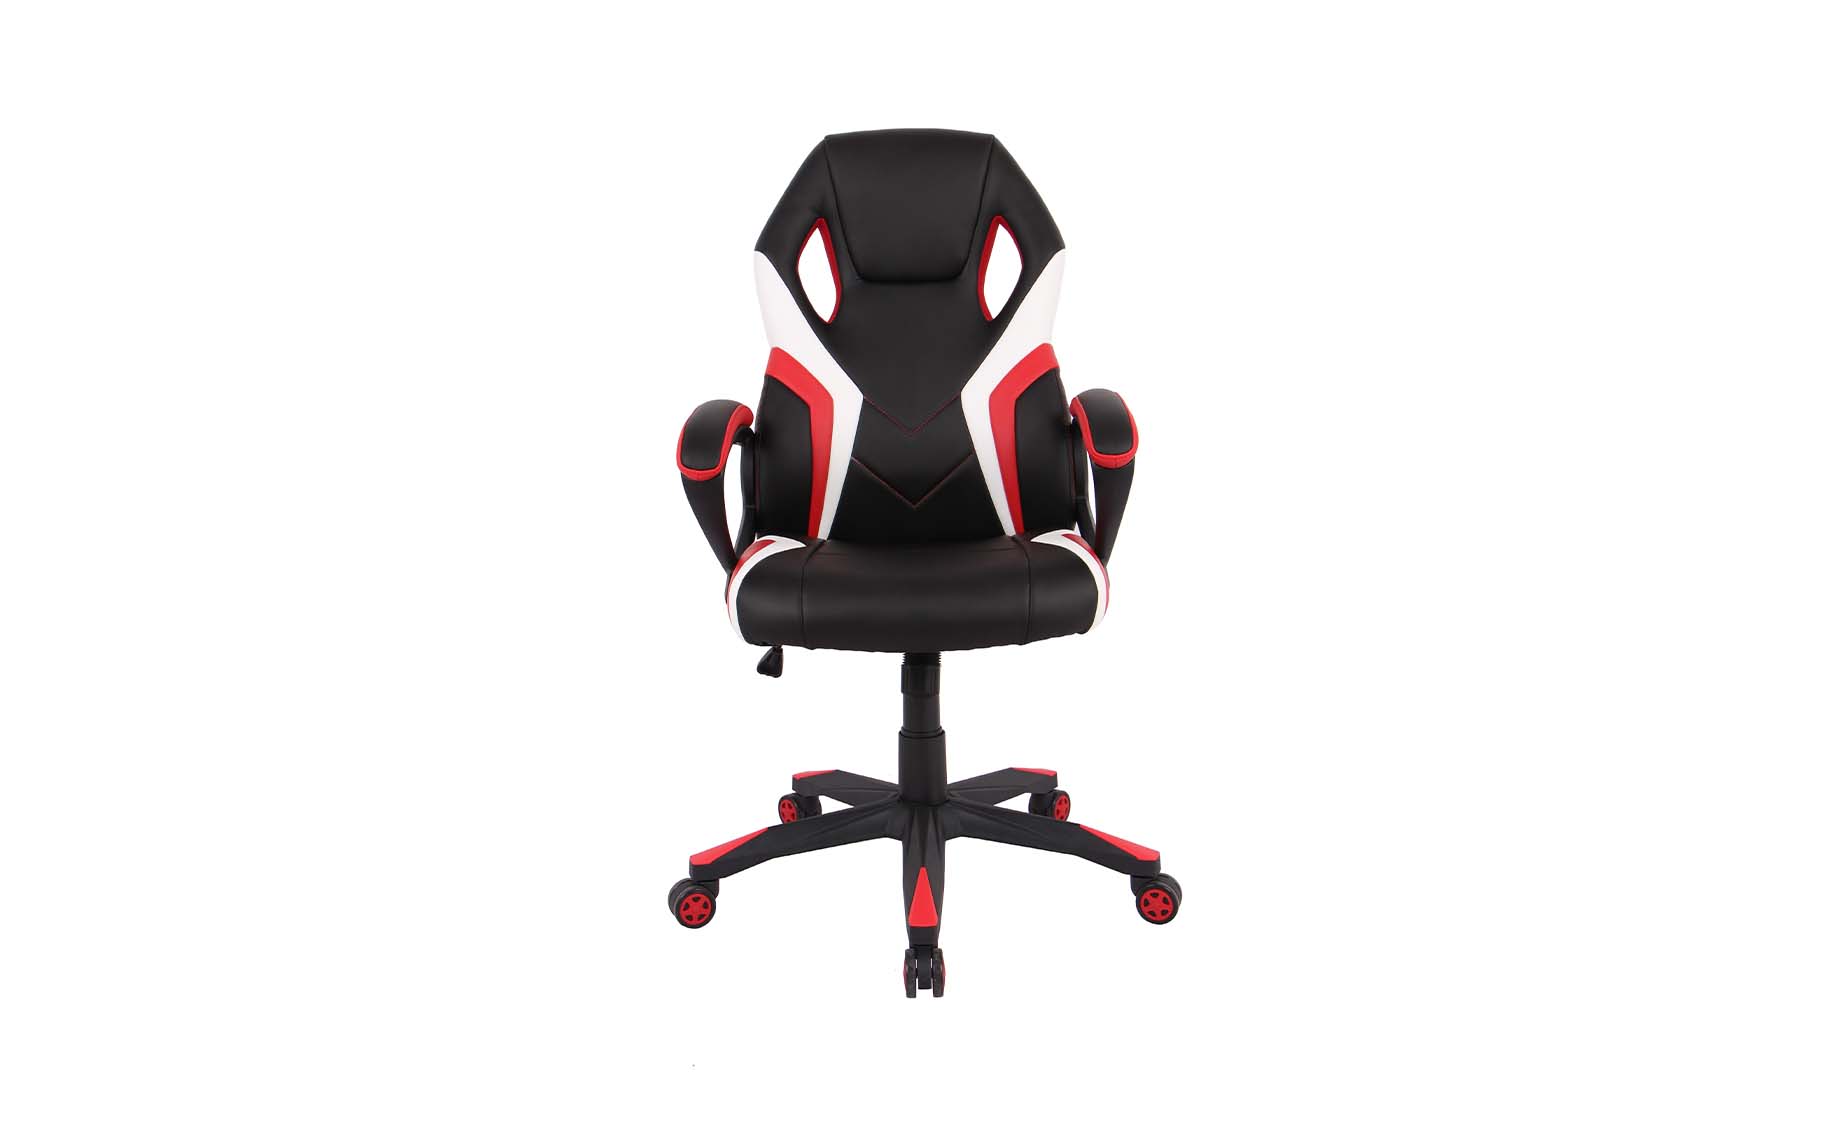 Gio kancelarijska fotelja 60,5x67x106,5/116cm crno/crveno/bela